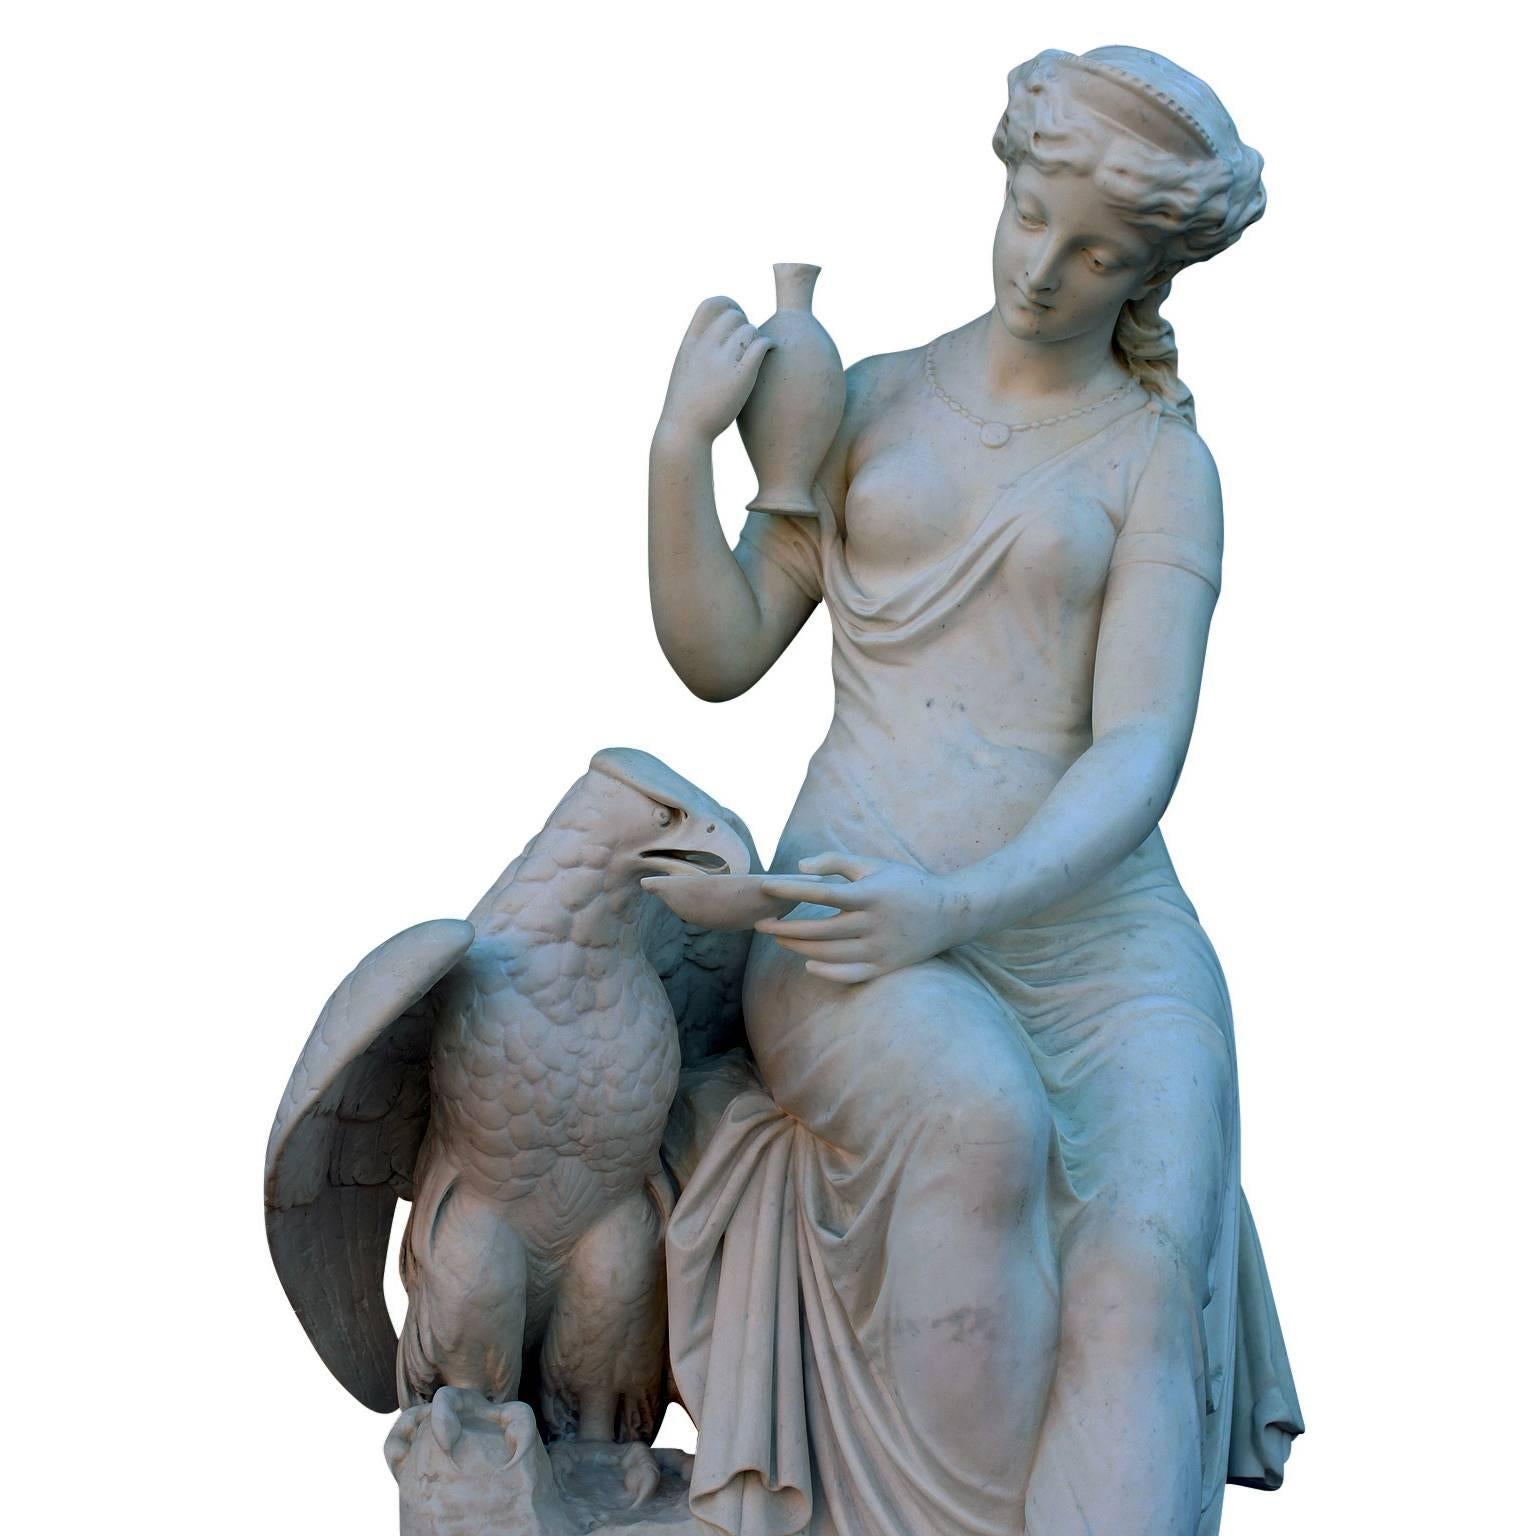 Très belle sculpture italienne du XIXe siècle en marbre de Carrare, grandeur nature, représentant 